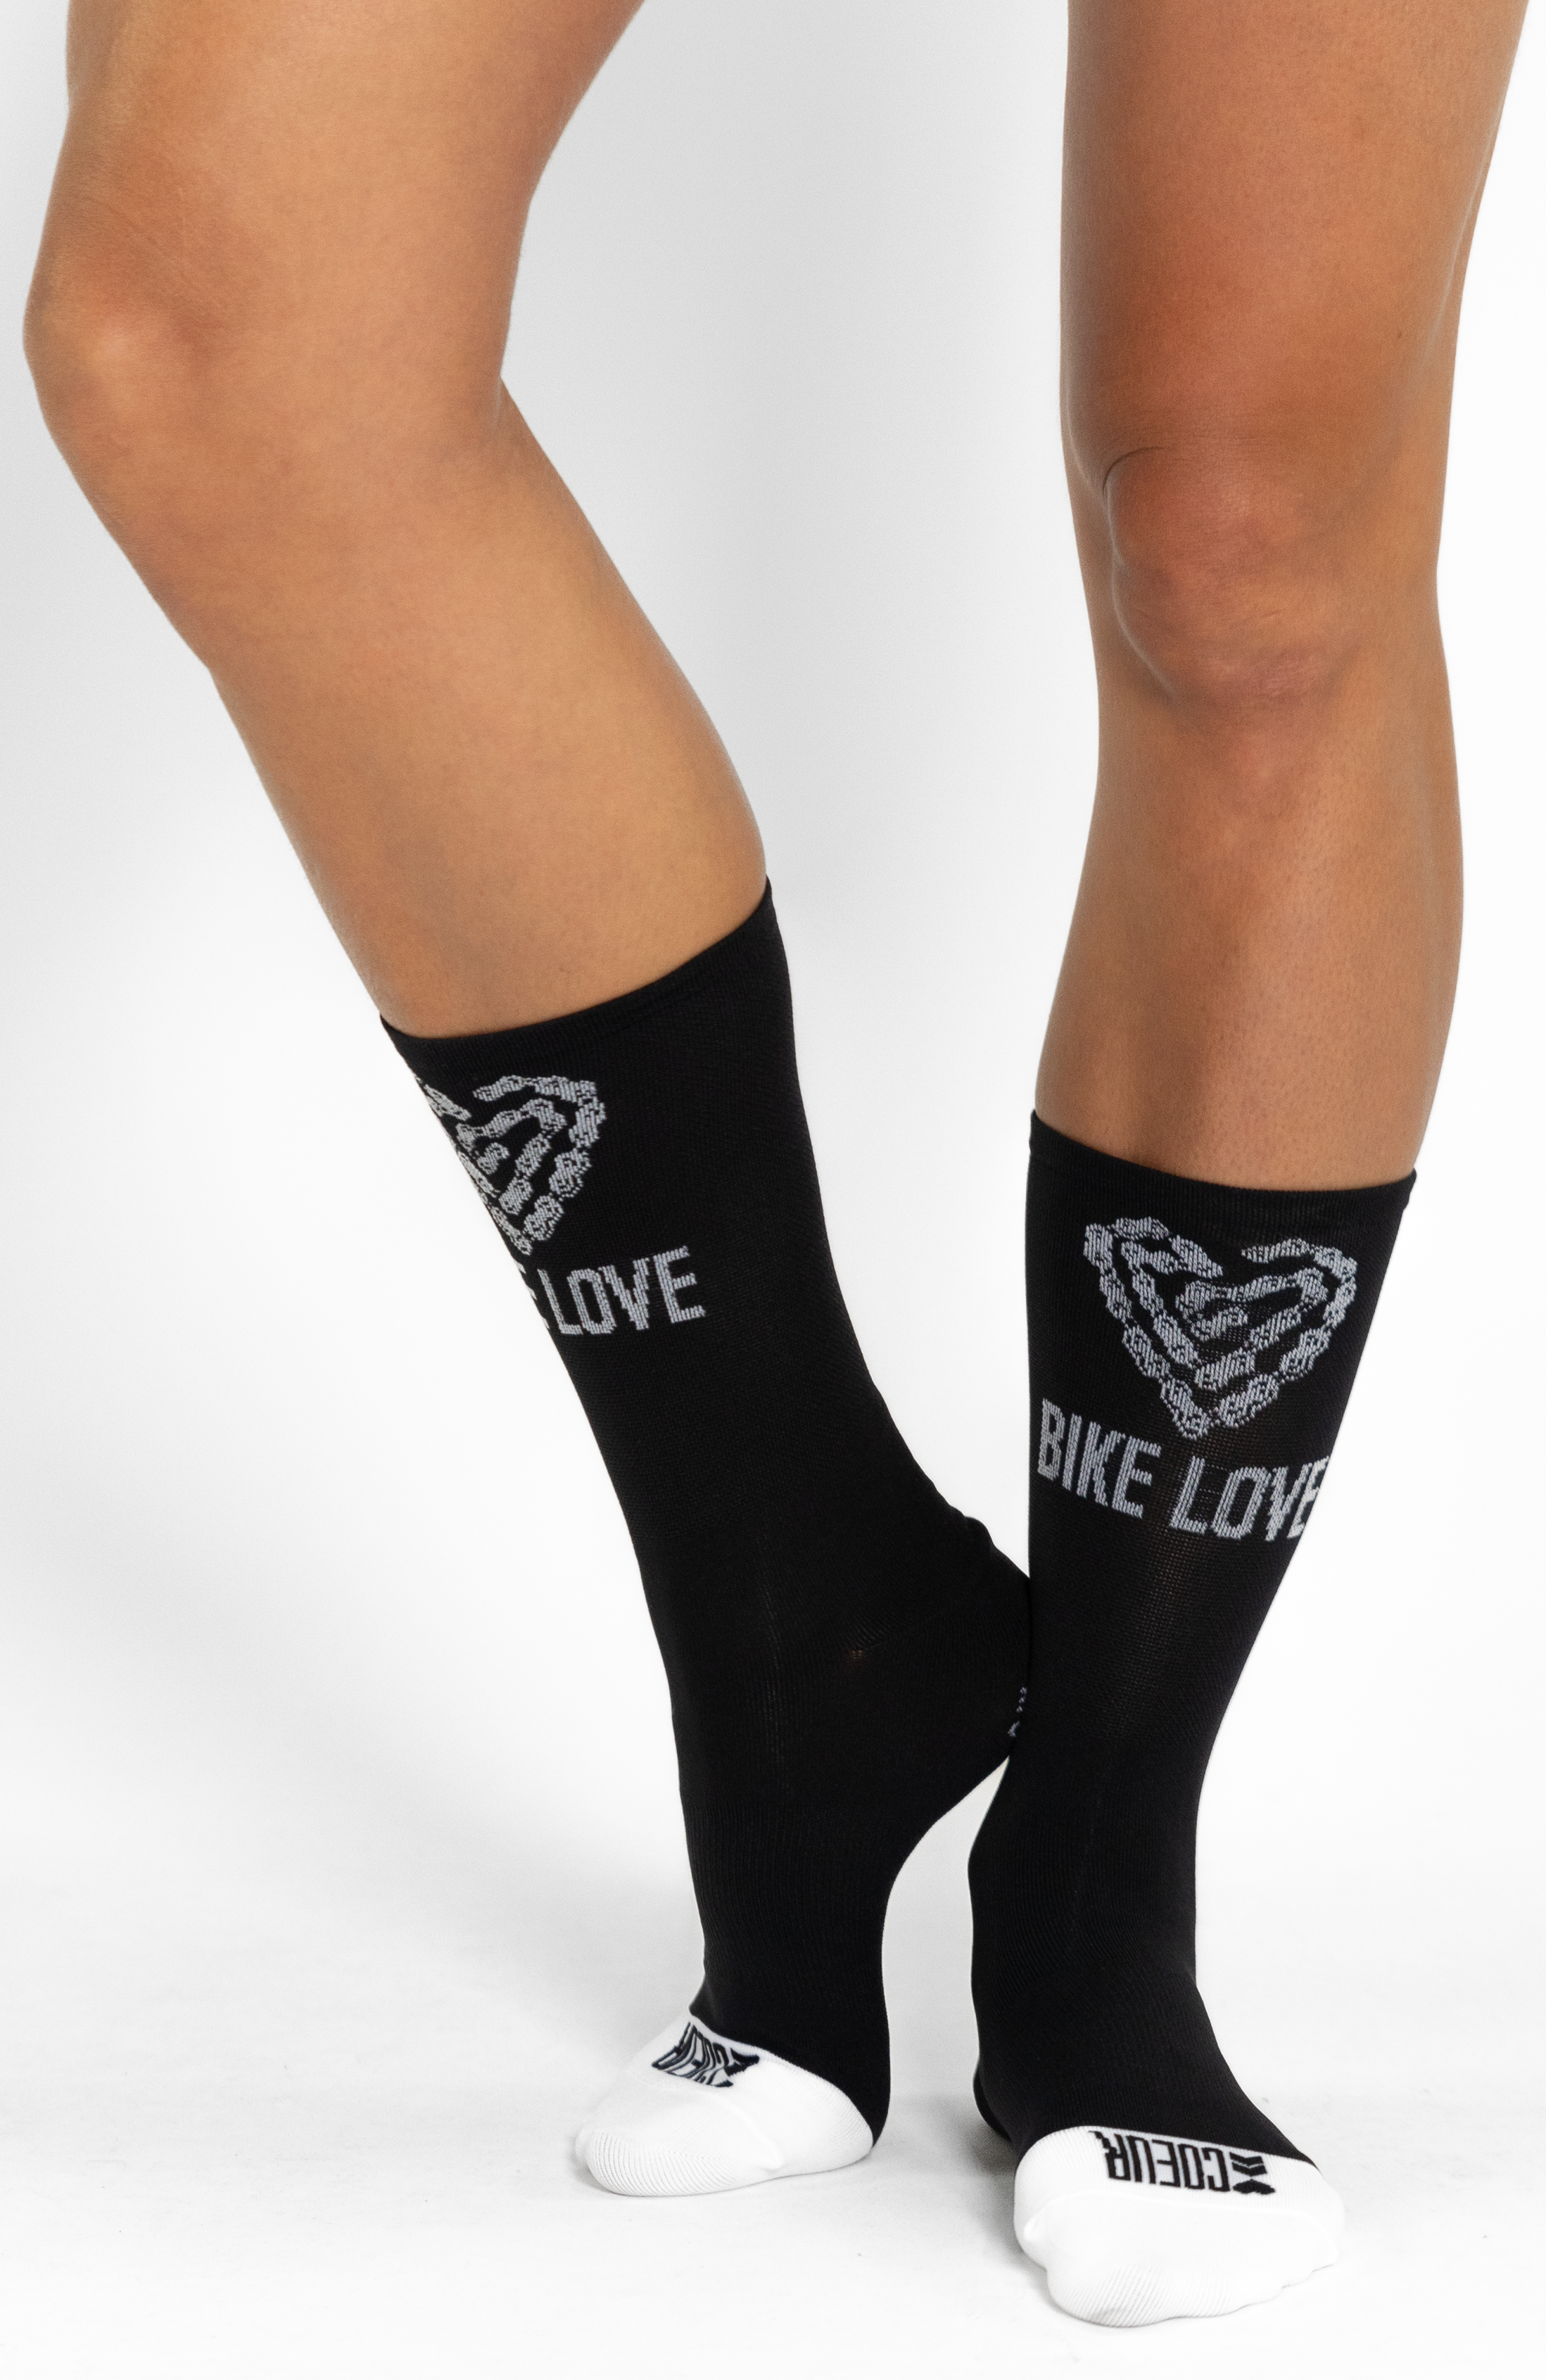 Coeur Sports Socks ONE SIZE / Black Bike Love Cycling Socks